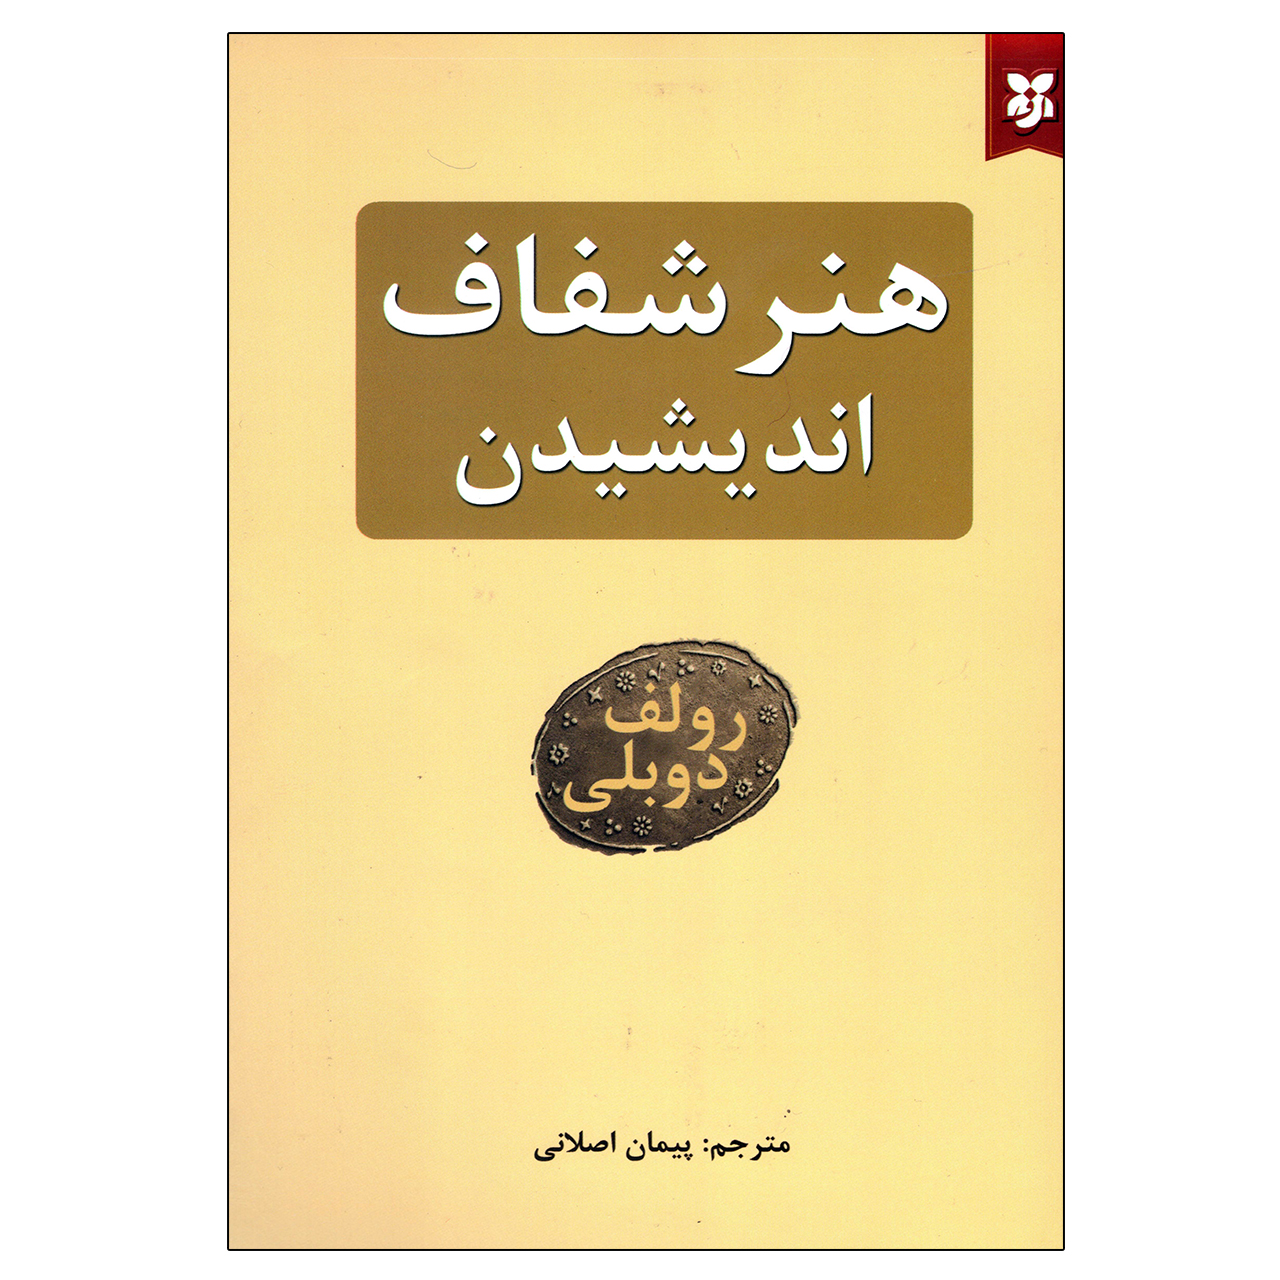 آنباکس کتاب هنر شفاف اندیشیدن اثر رولف دوبلی نشر نیک فرجام توسط behnaz bemani در تاریخ ۲۱ تیر ۱۴۰۰